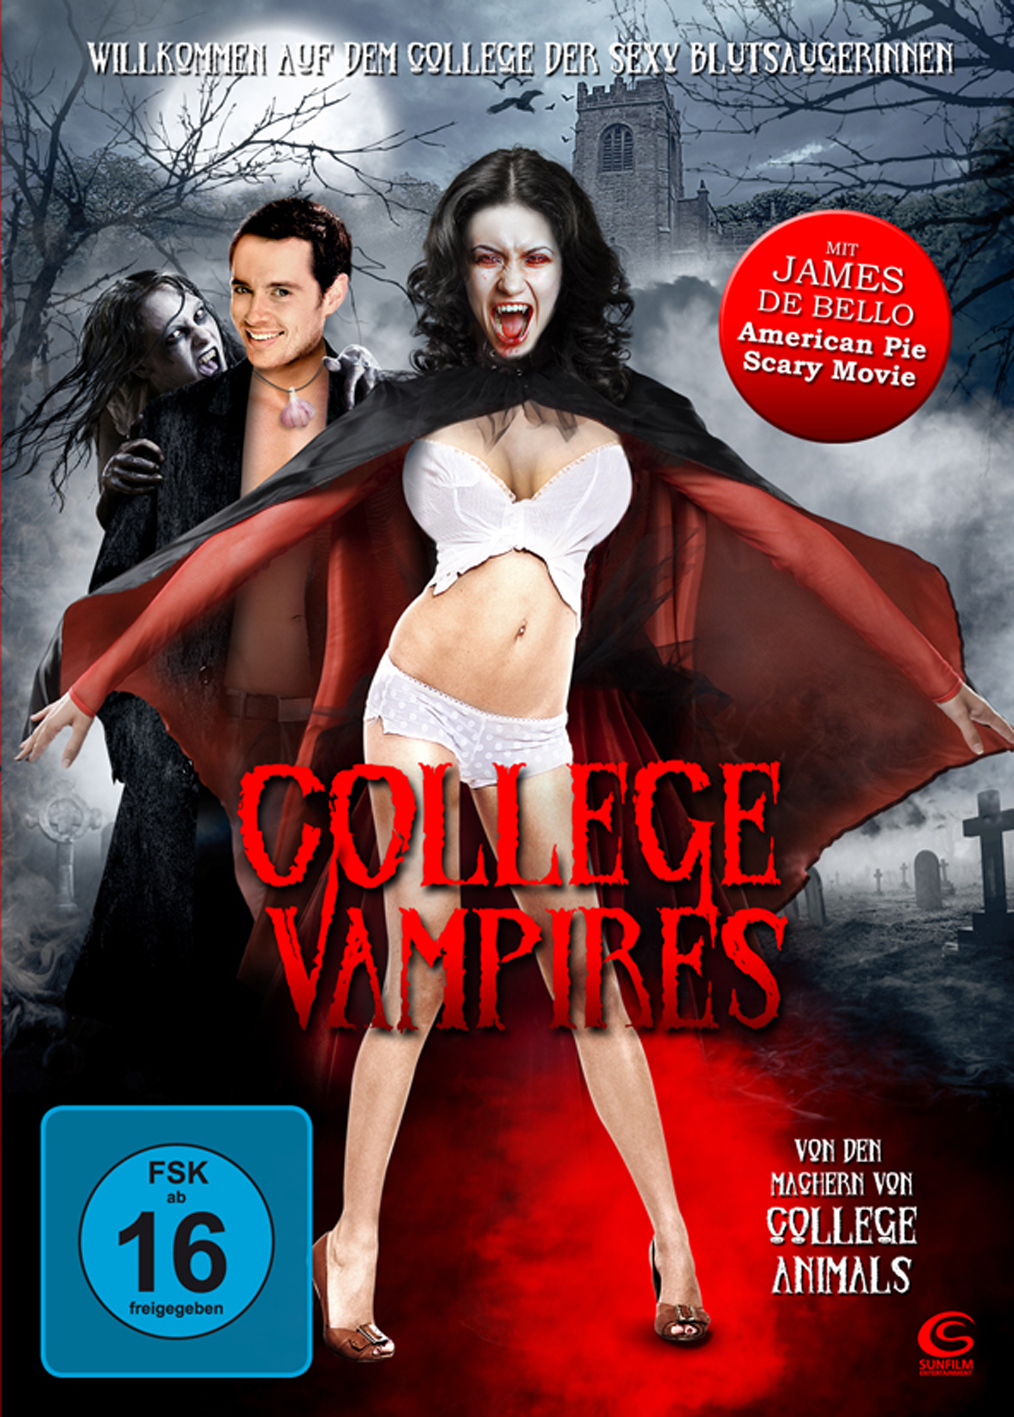 Plakat von "College Vampires"